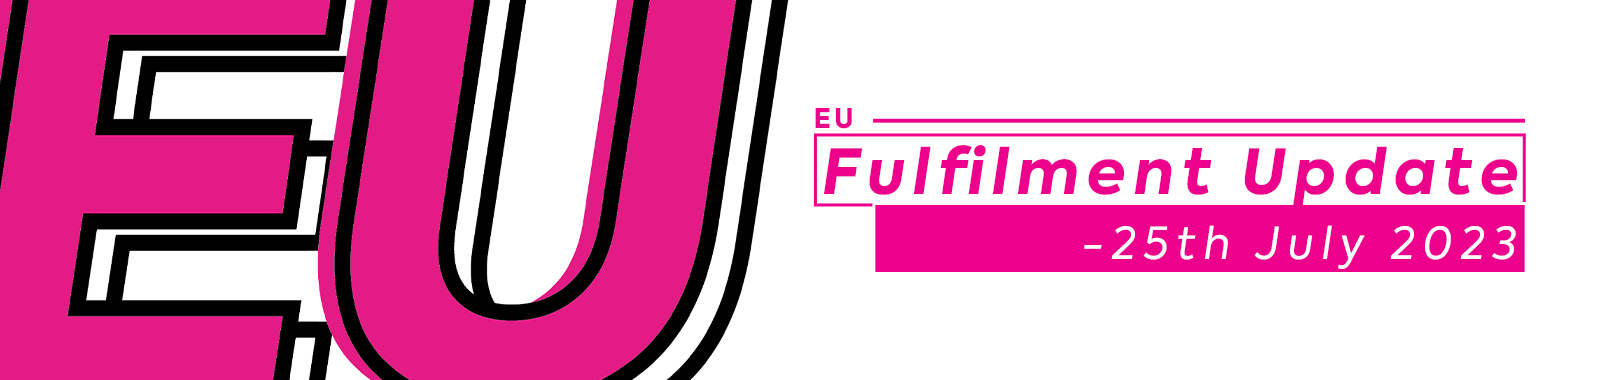 EU Fulfilment Update -25th July